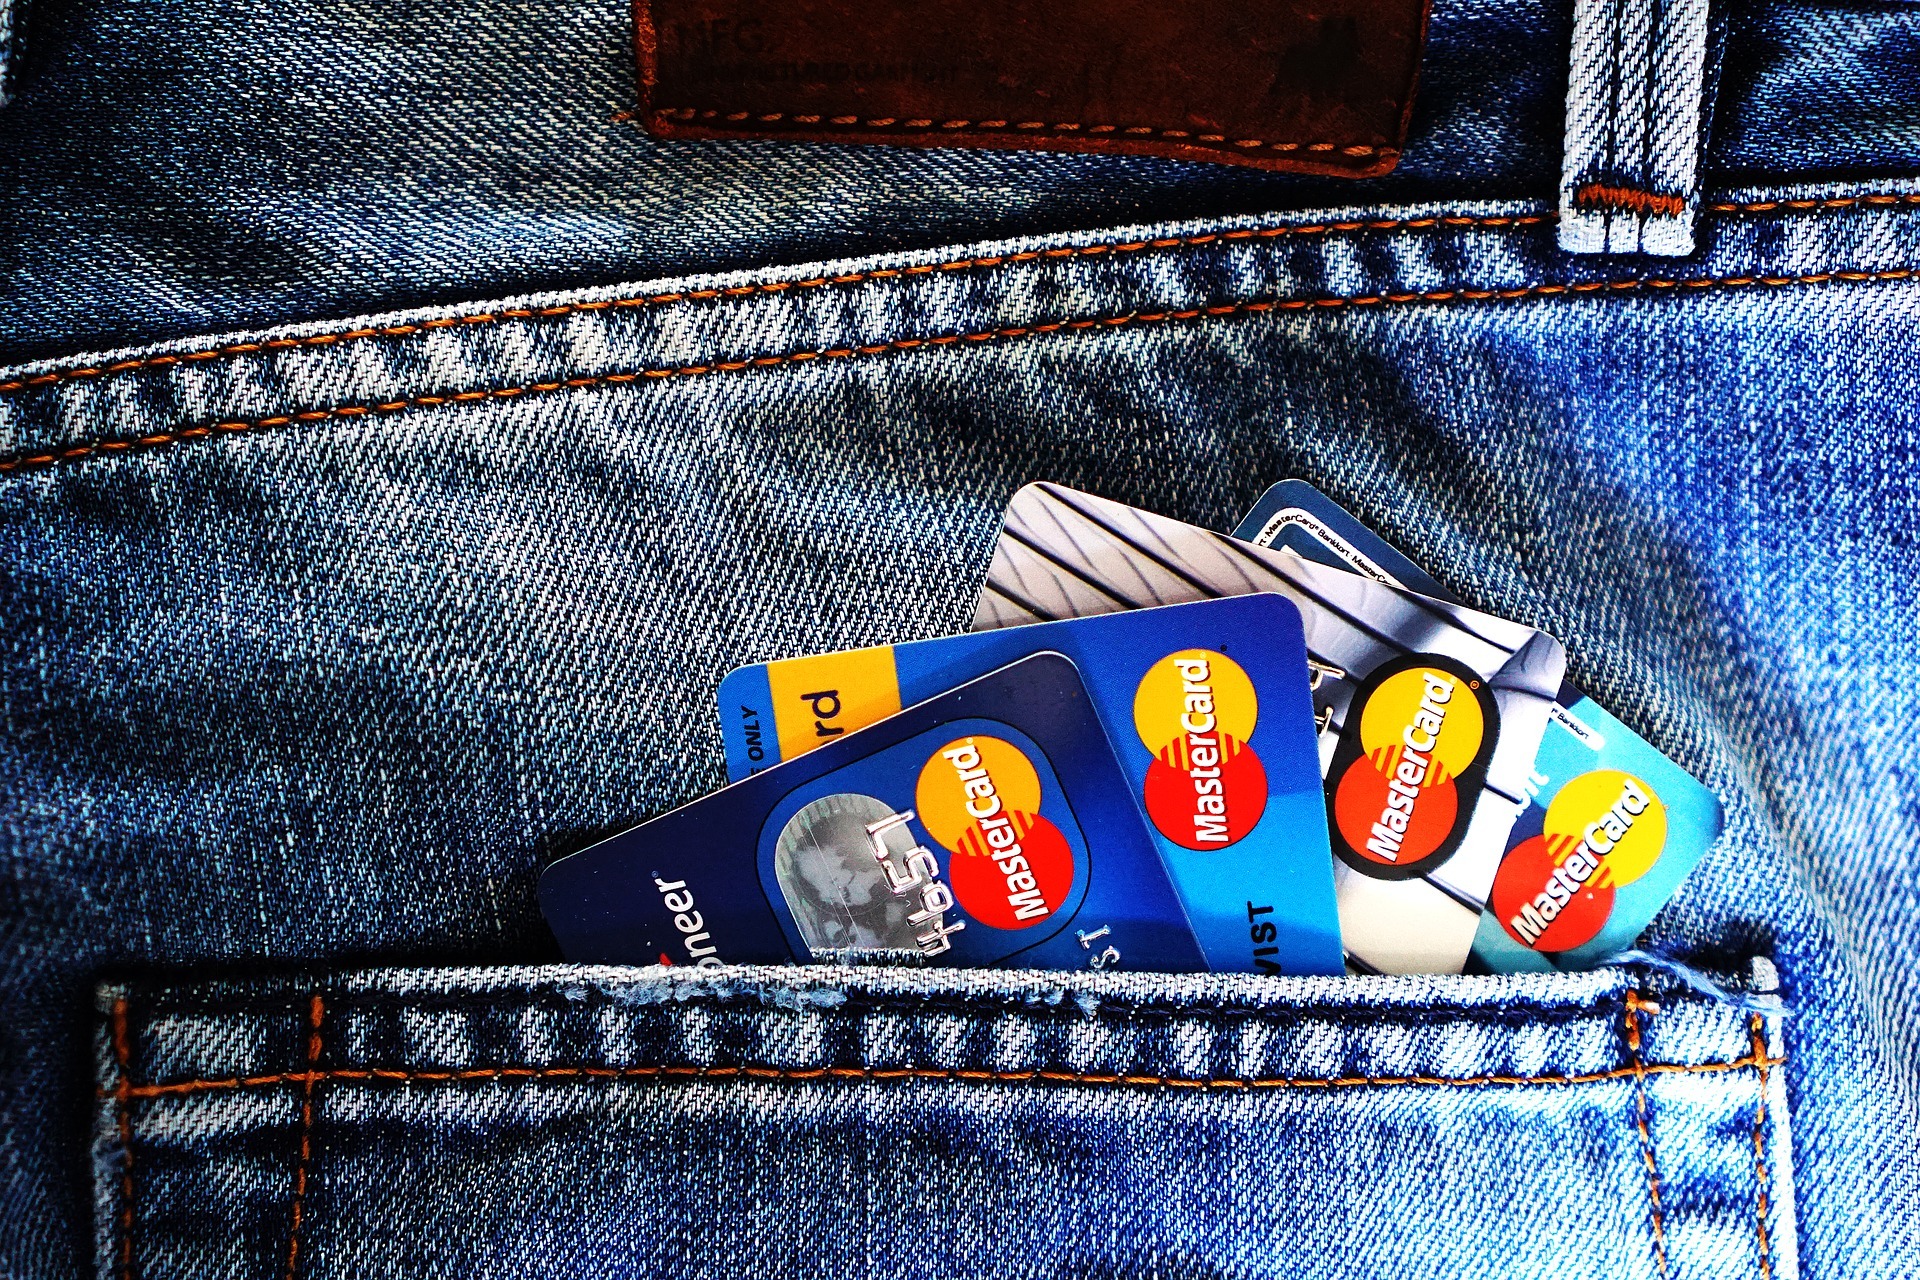 Rechtslage zu Negativzinsen - unzulässig? Hosentasche Hose Geld Kreditkarte EC-Karte Mastercard